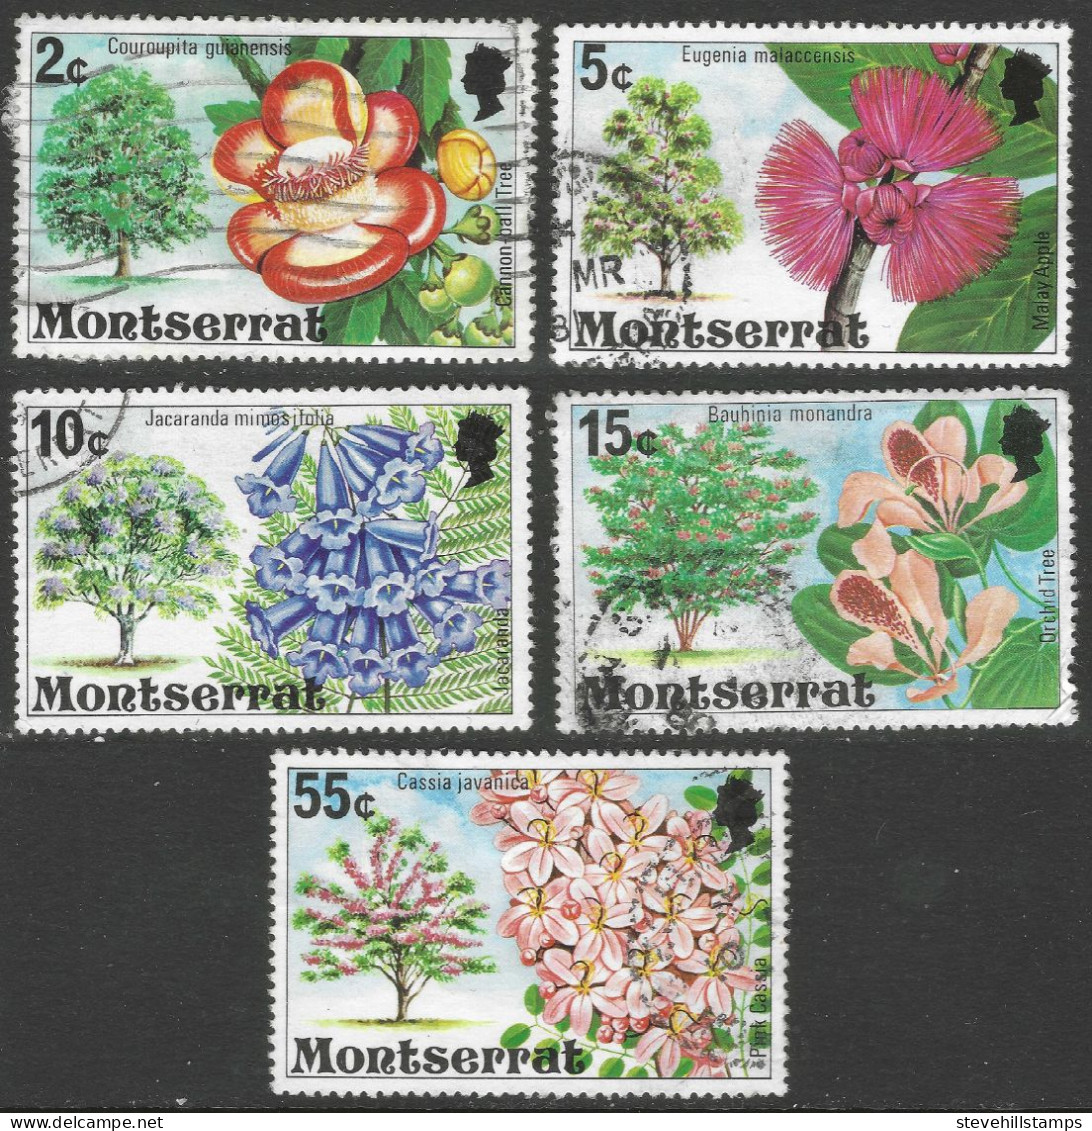 Montserrat. 1976 Flowering Trees. 5 Used Values To 55c (2c, 5c, 10c, 15c, 55c) . SG 372etc. M3074 - Montserrat